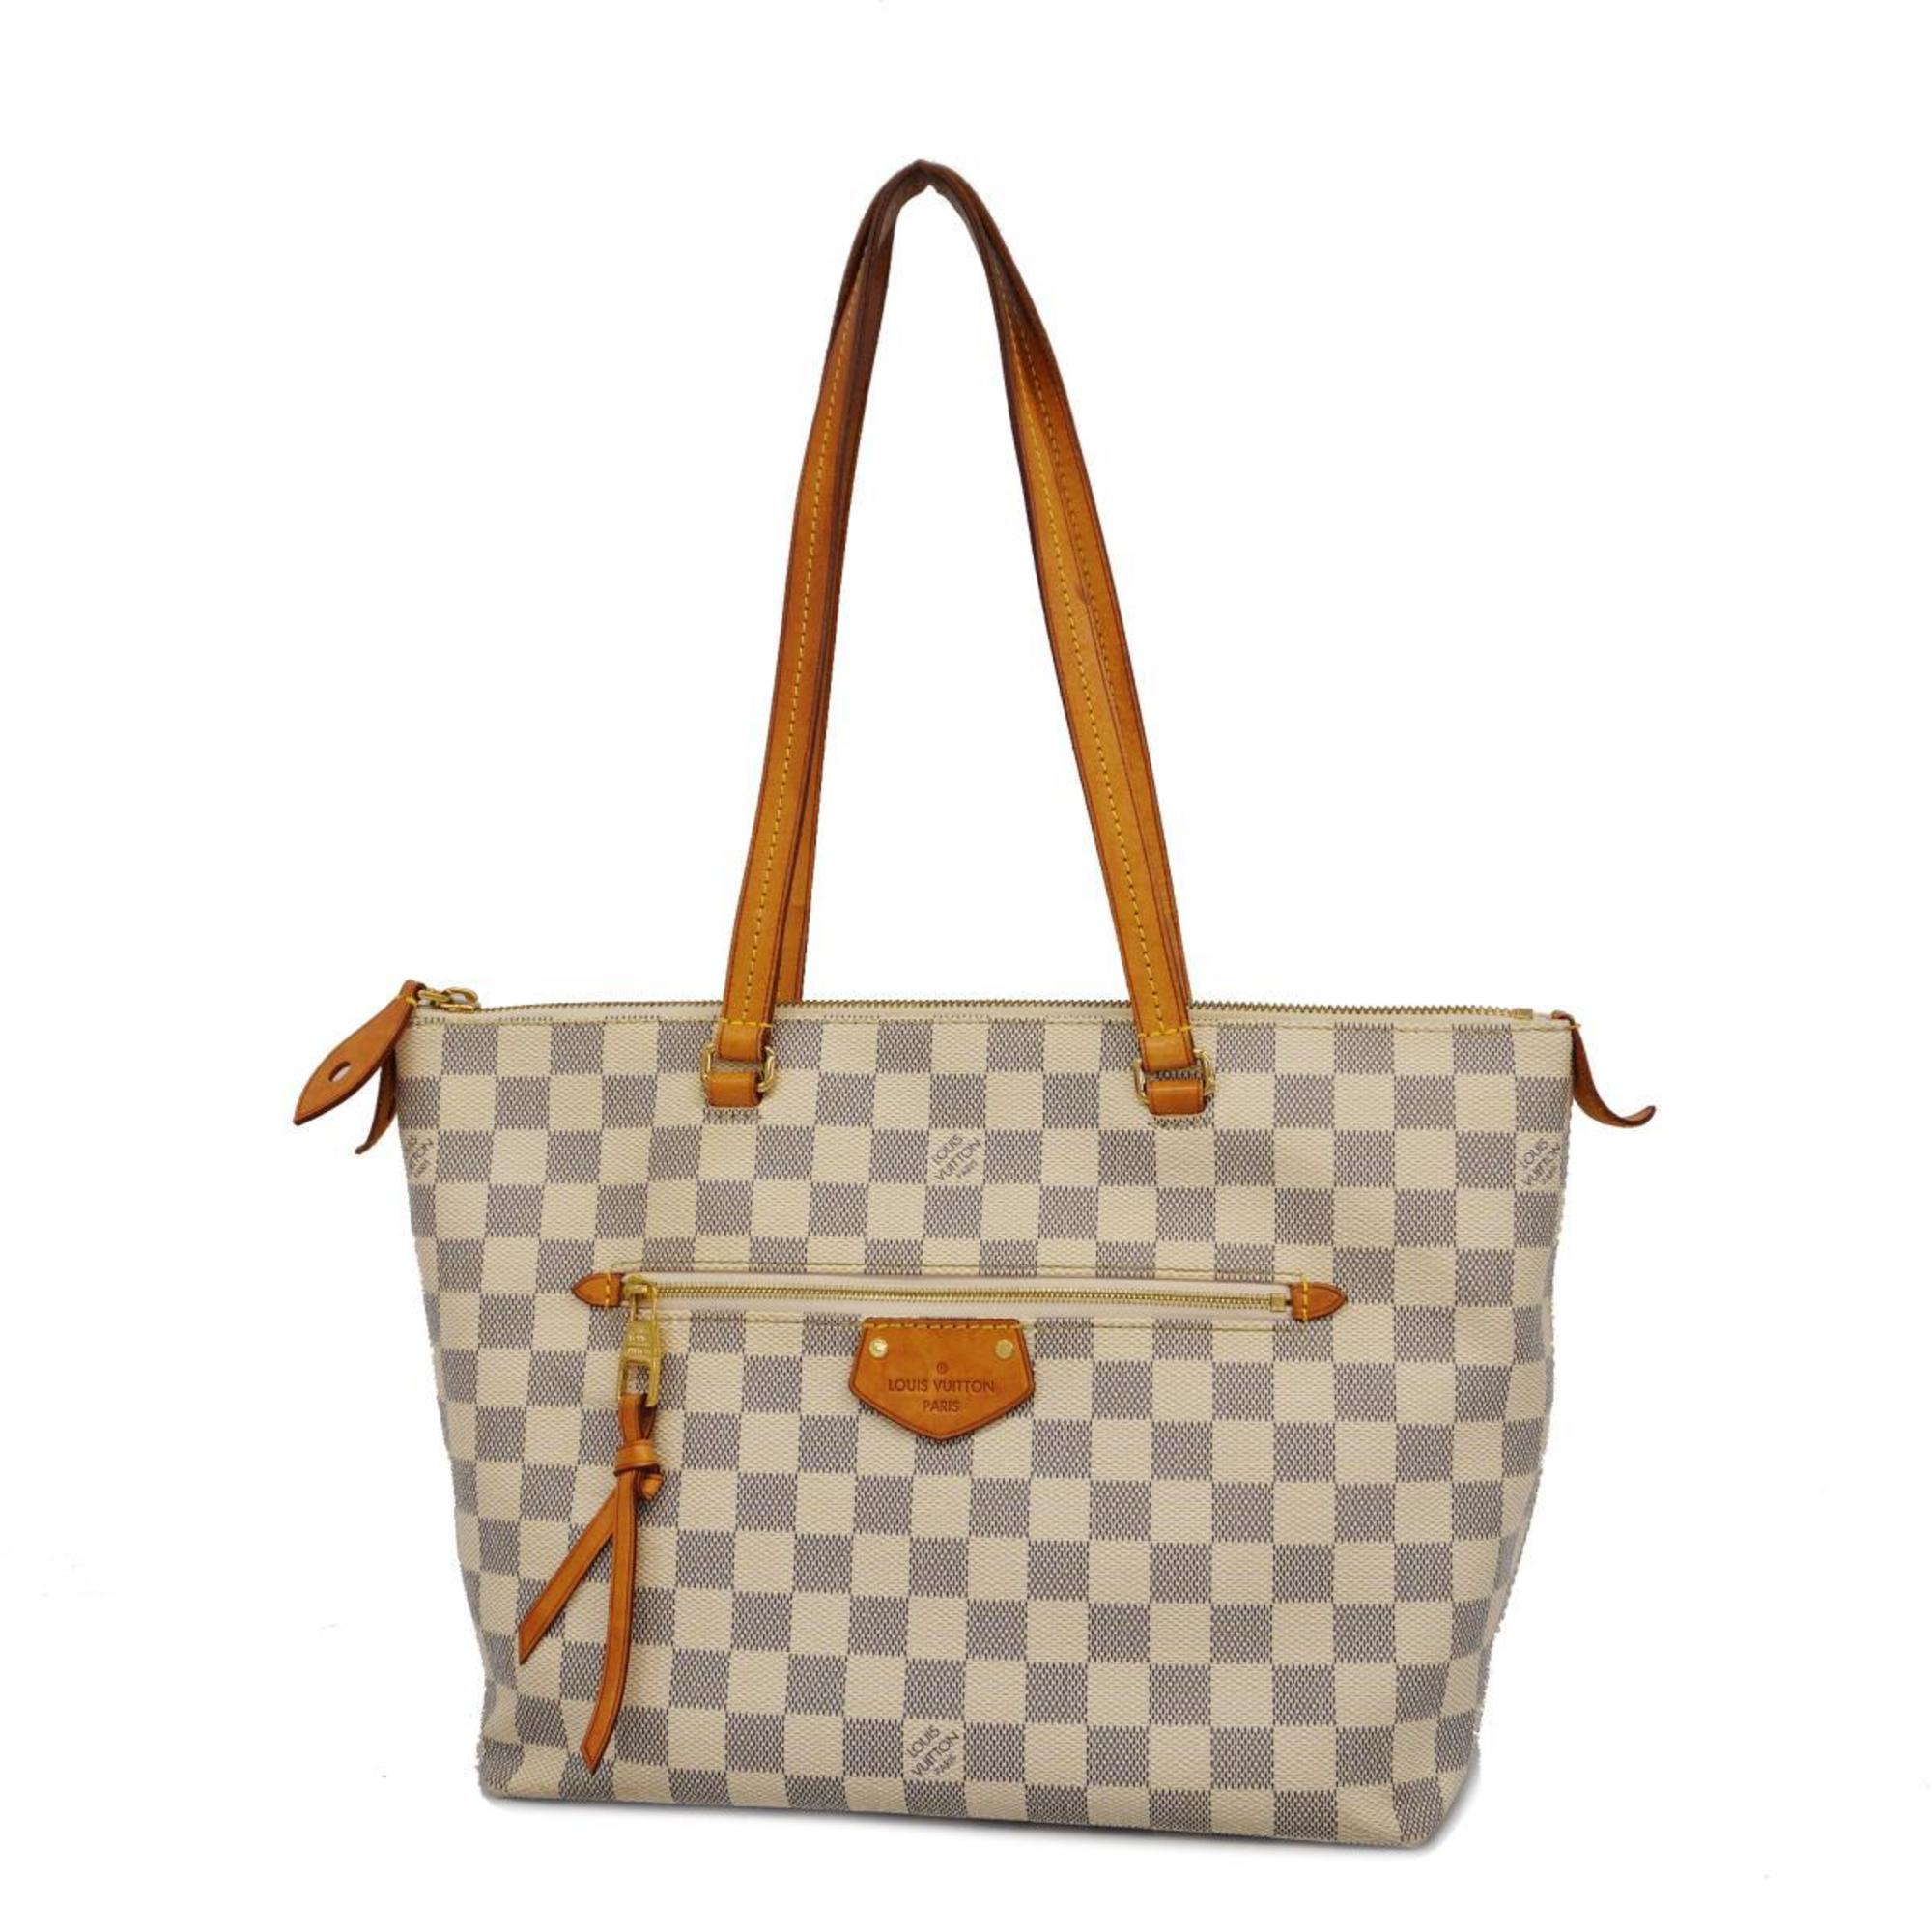 Louis Vuitton Tote Bag Damier Azur Iena PM N44039 White Women's